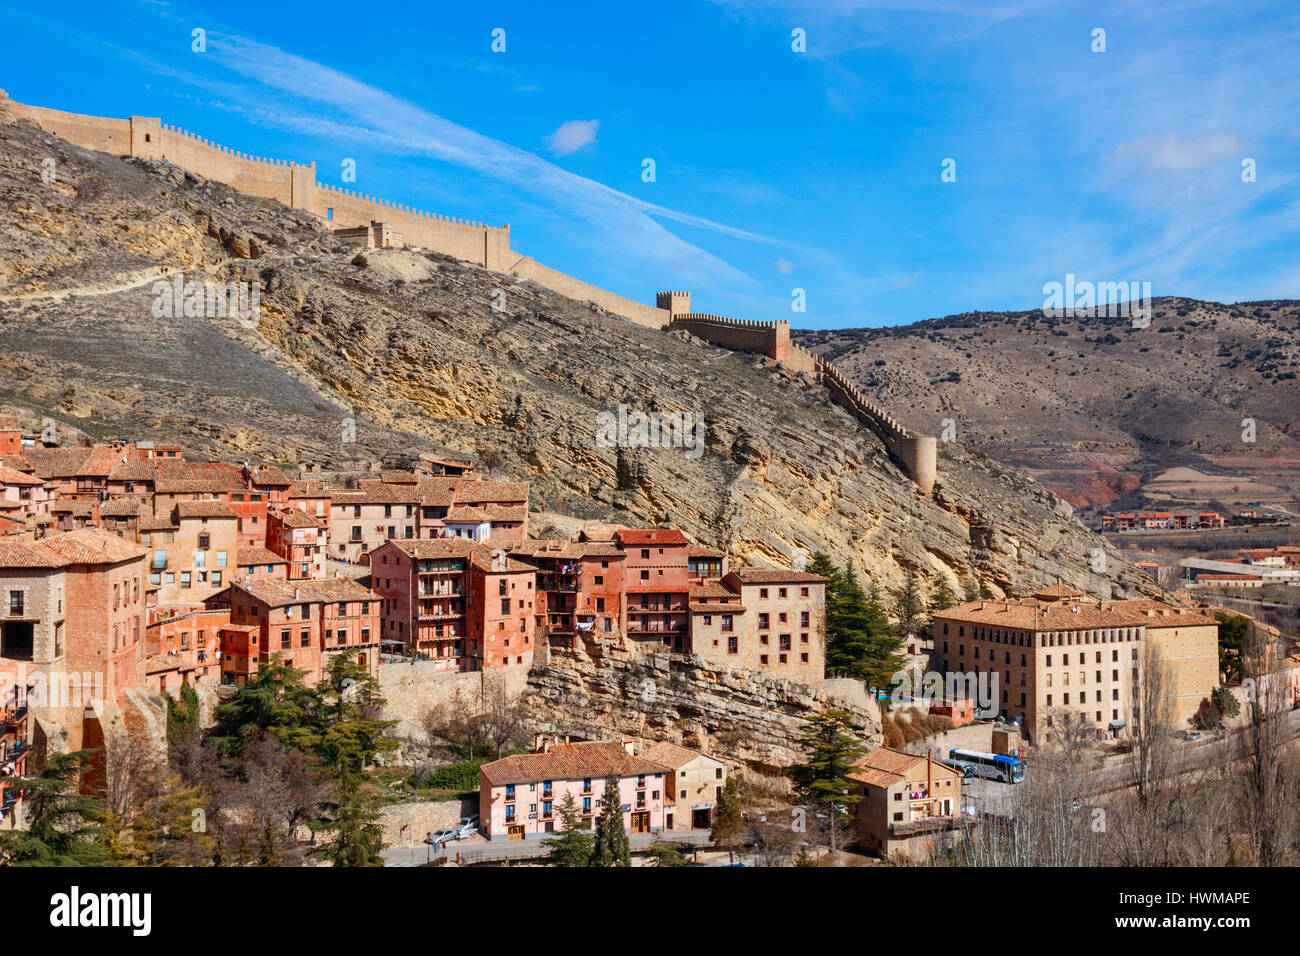 Vista su Albarricin, le sue mura e la valle in una giornata di sole con un cielo blu. Albarracin è situata nella provincia di Teruel, Spagna. Foto Stock